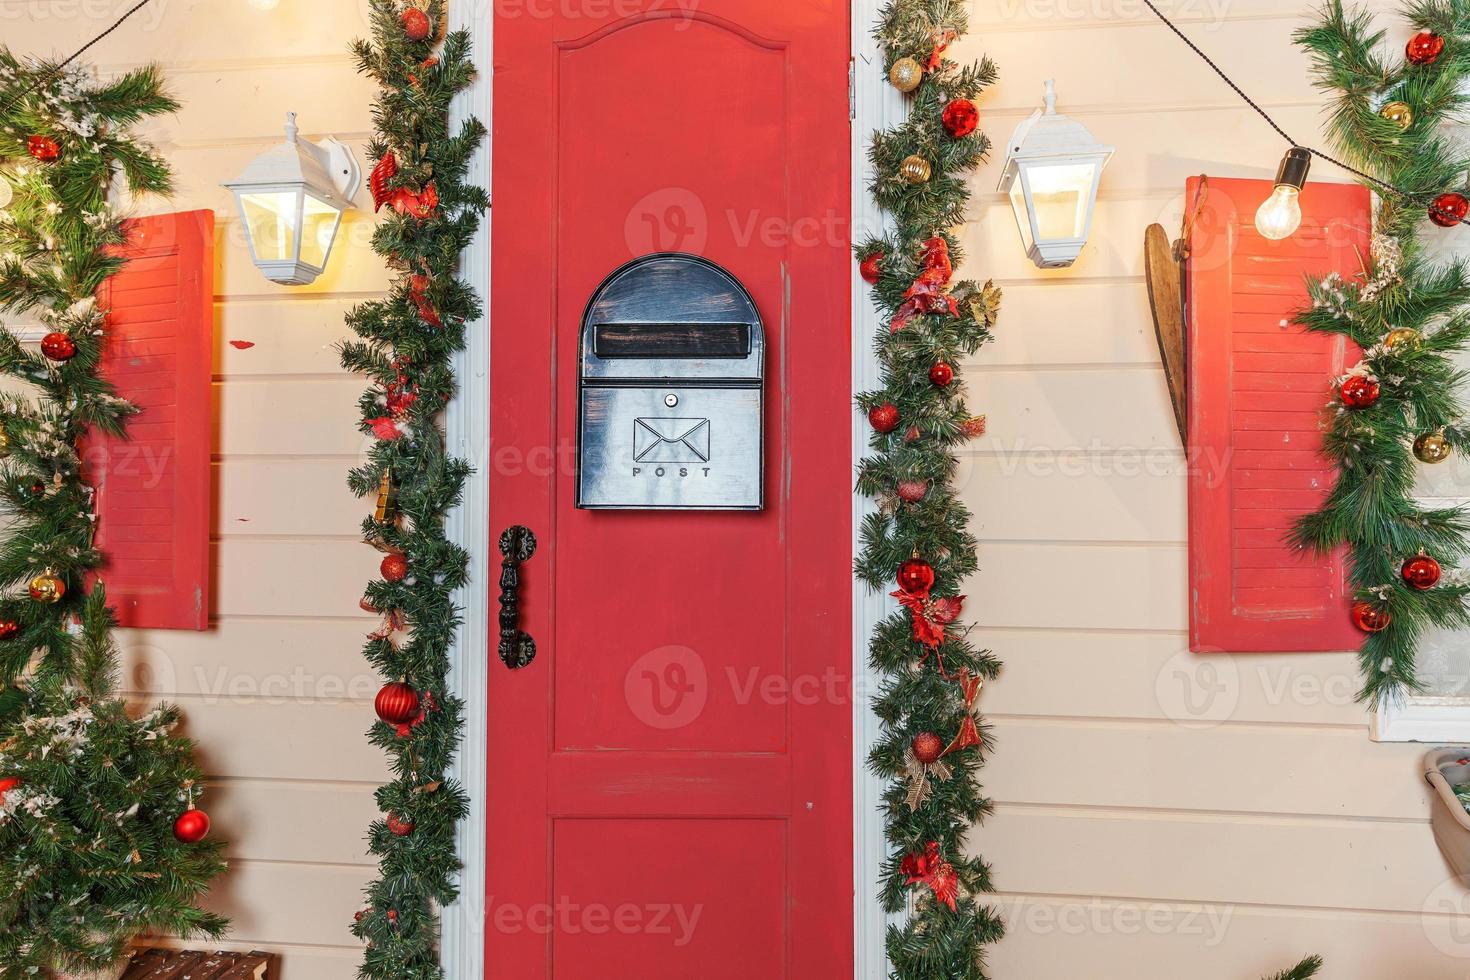 ideia de decoração de varanda de natal. entrada da casa com porta vermelha decorada para feriados. guirlanda de grinalda vermelha e verde de galhos de árvores do abeto e luzes na grade. véspera de natal em casa foto